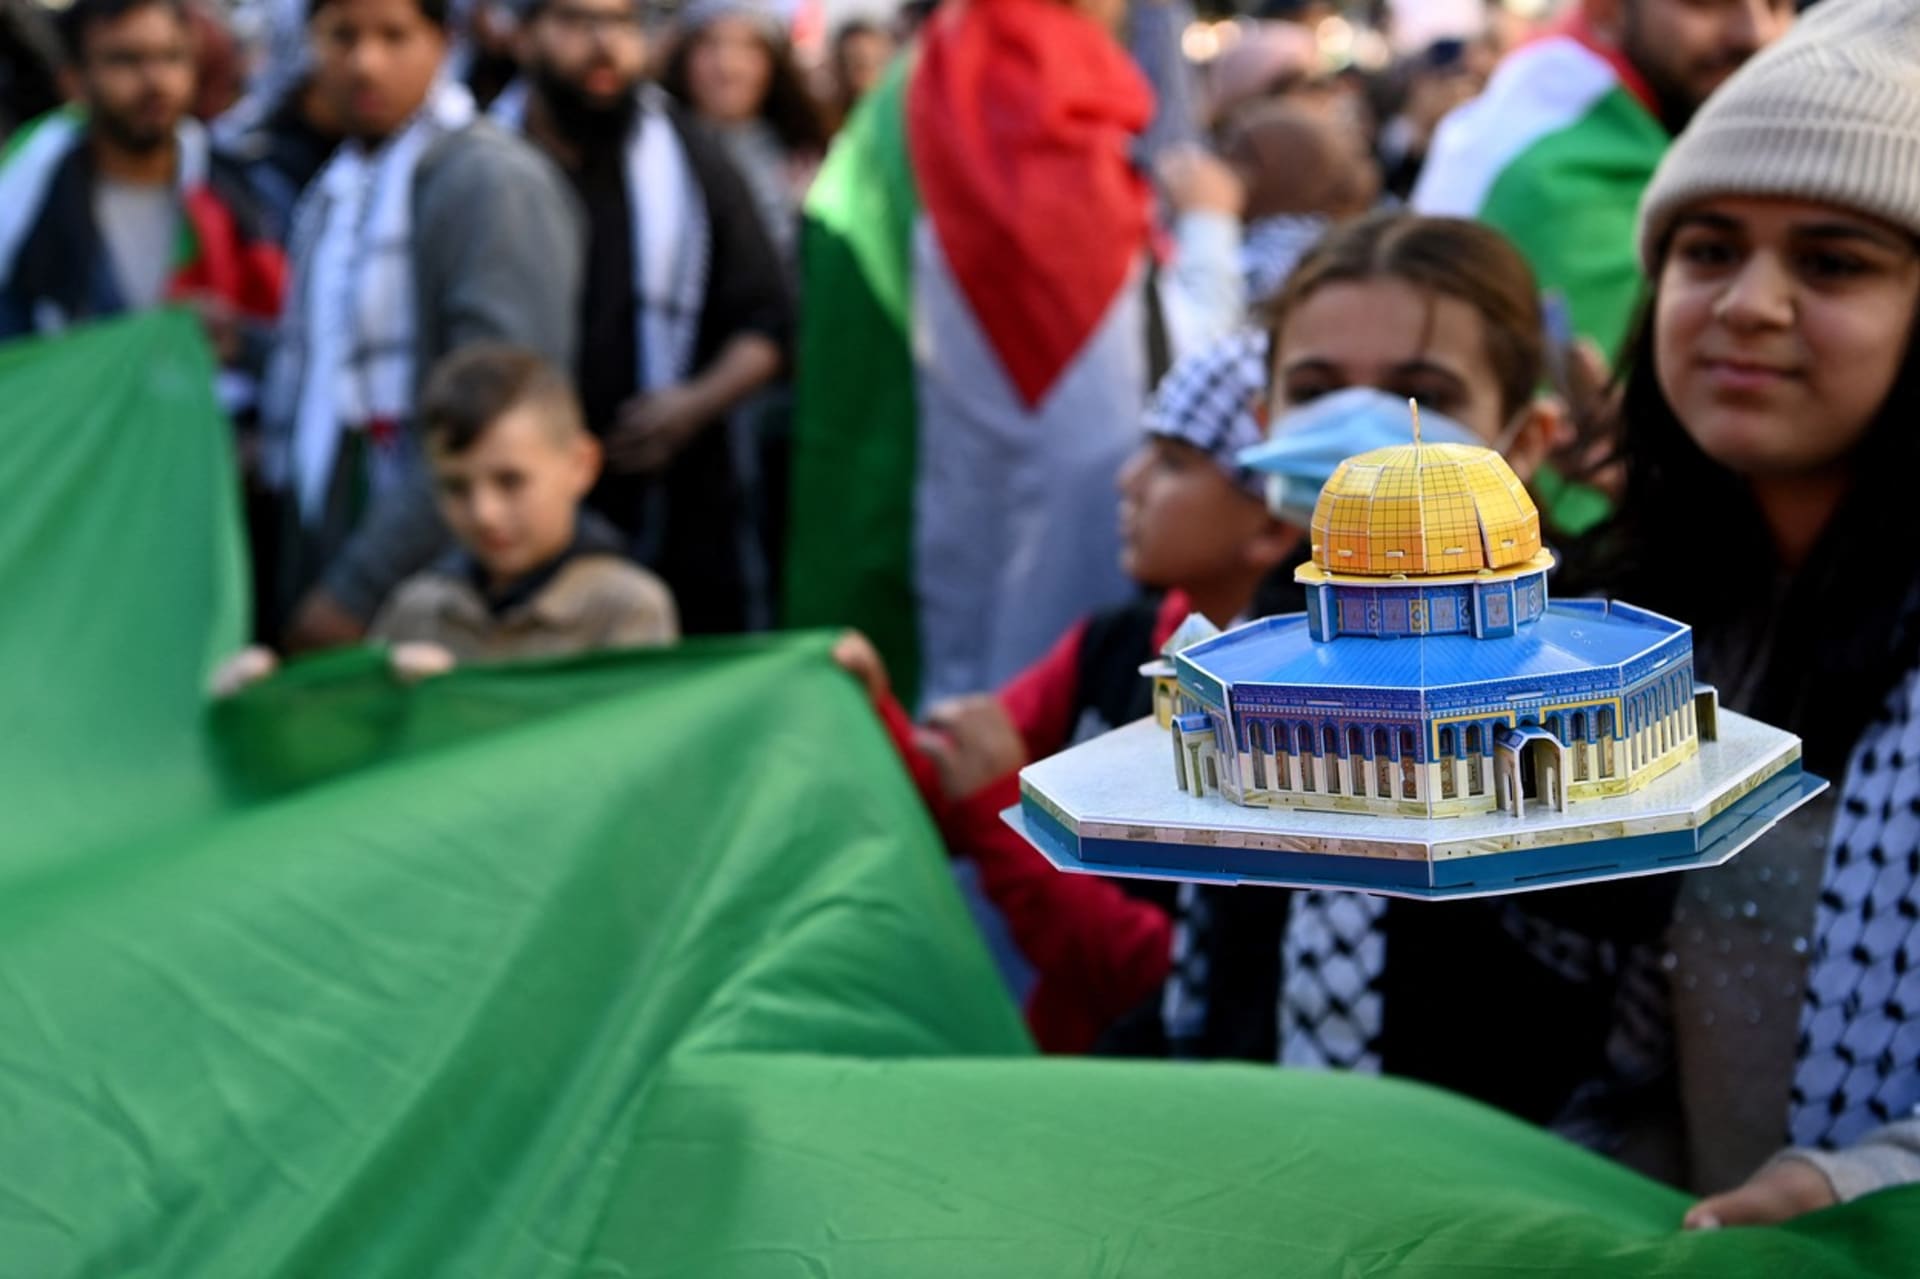 Navzdory válečnému stavu chodí Izraelci i Palestinci demonstrovat do ulic. Zde palestinská žena drží model mešity al-Aksá, u které došlo před týdnem k potyčce, jež odstartovala vlnu krveprolití.